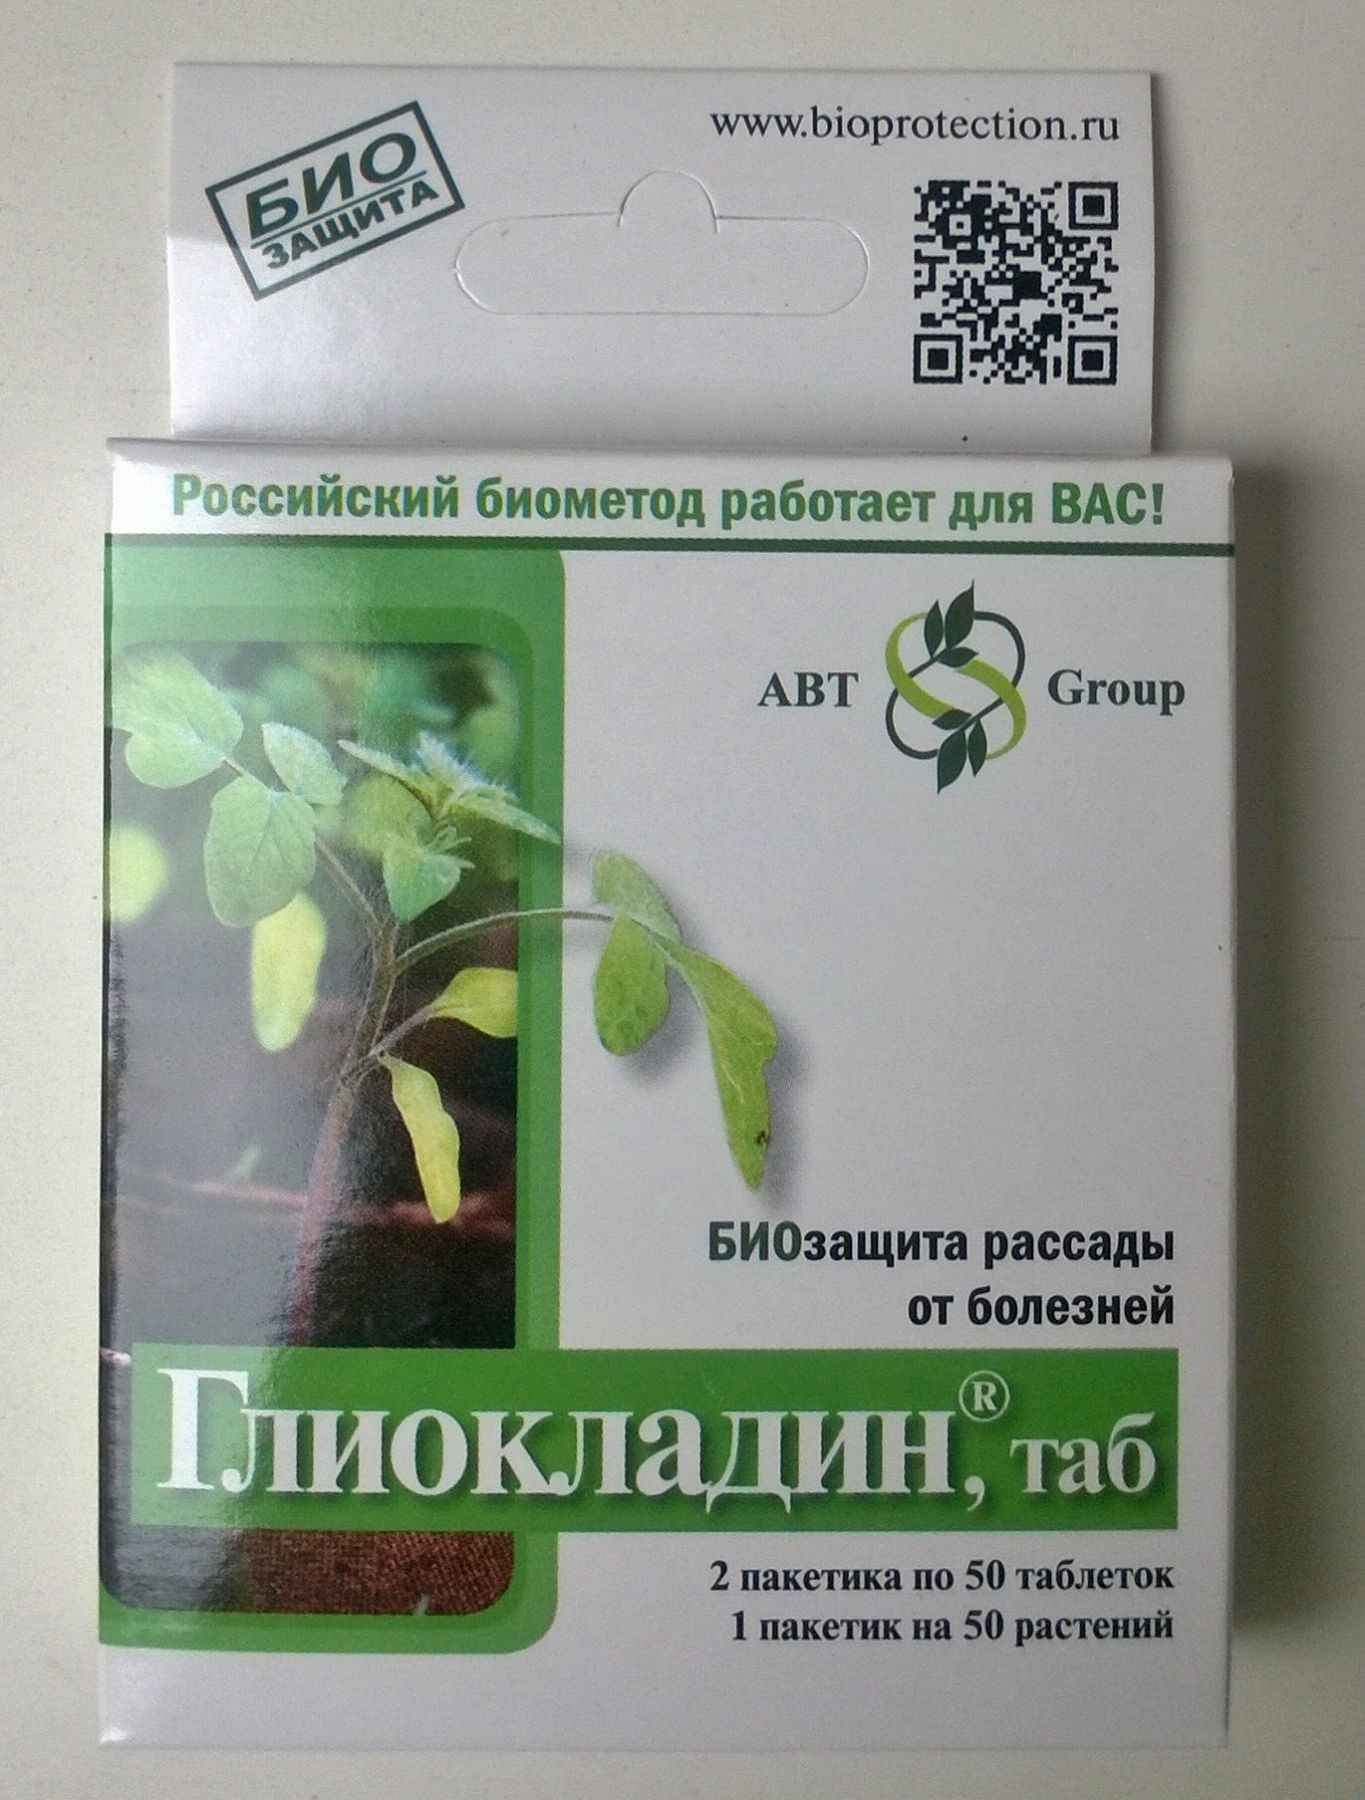 Глиокладин: состав, применение биопрепарата для растений и отзывы об использовании